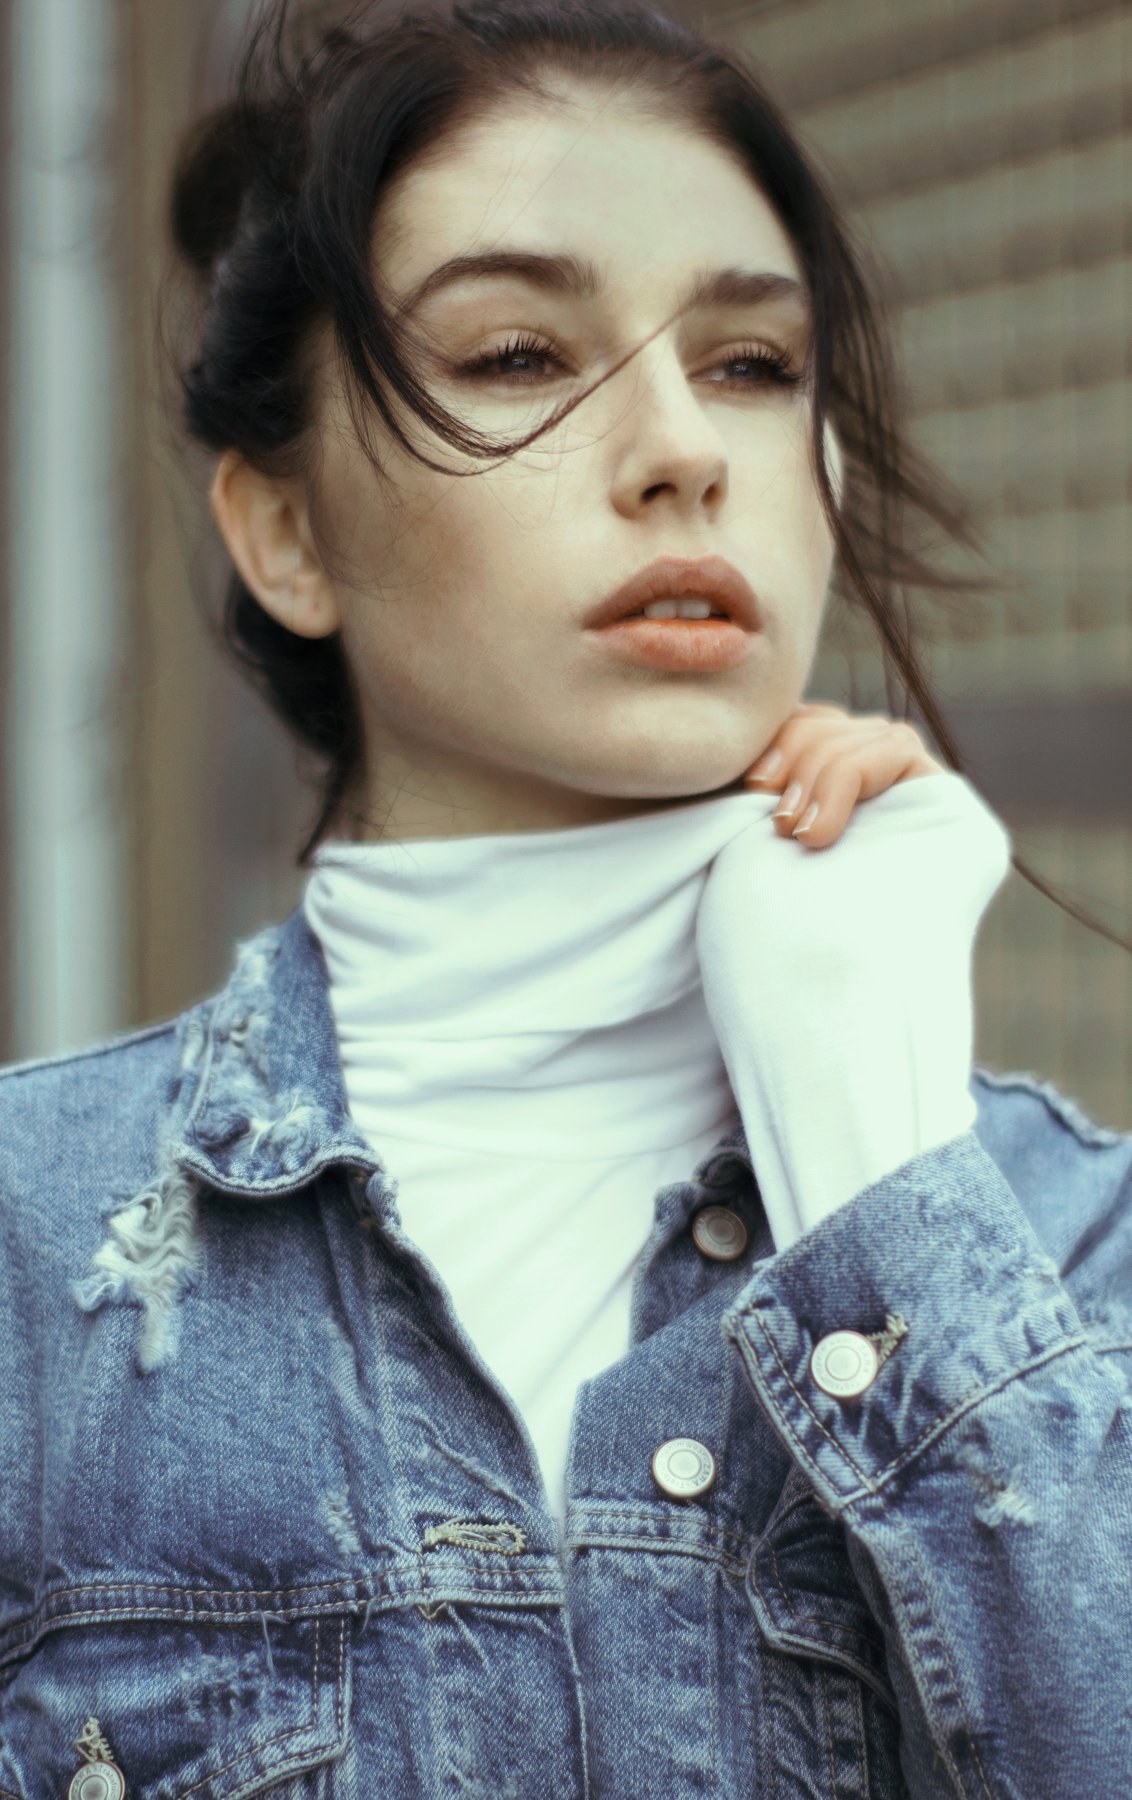 #girl #portrait #retro #jeans #jacket, fineus